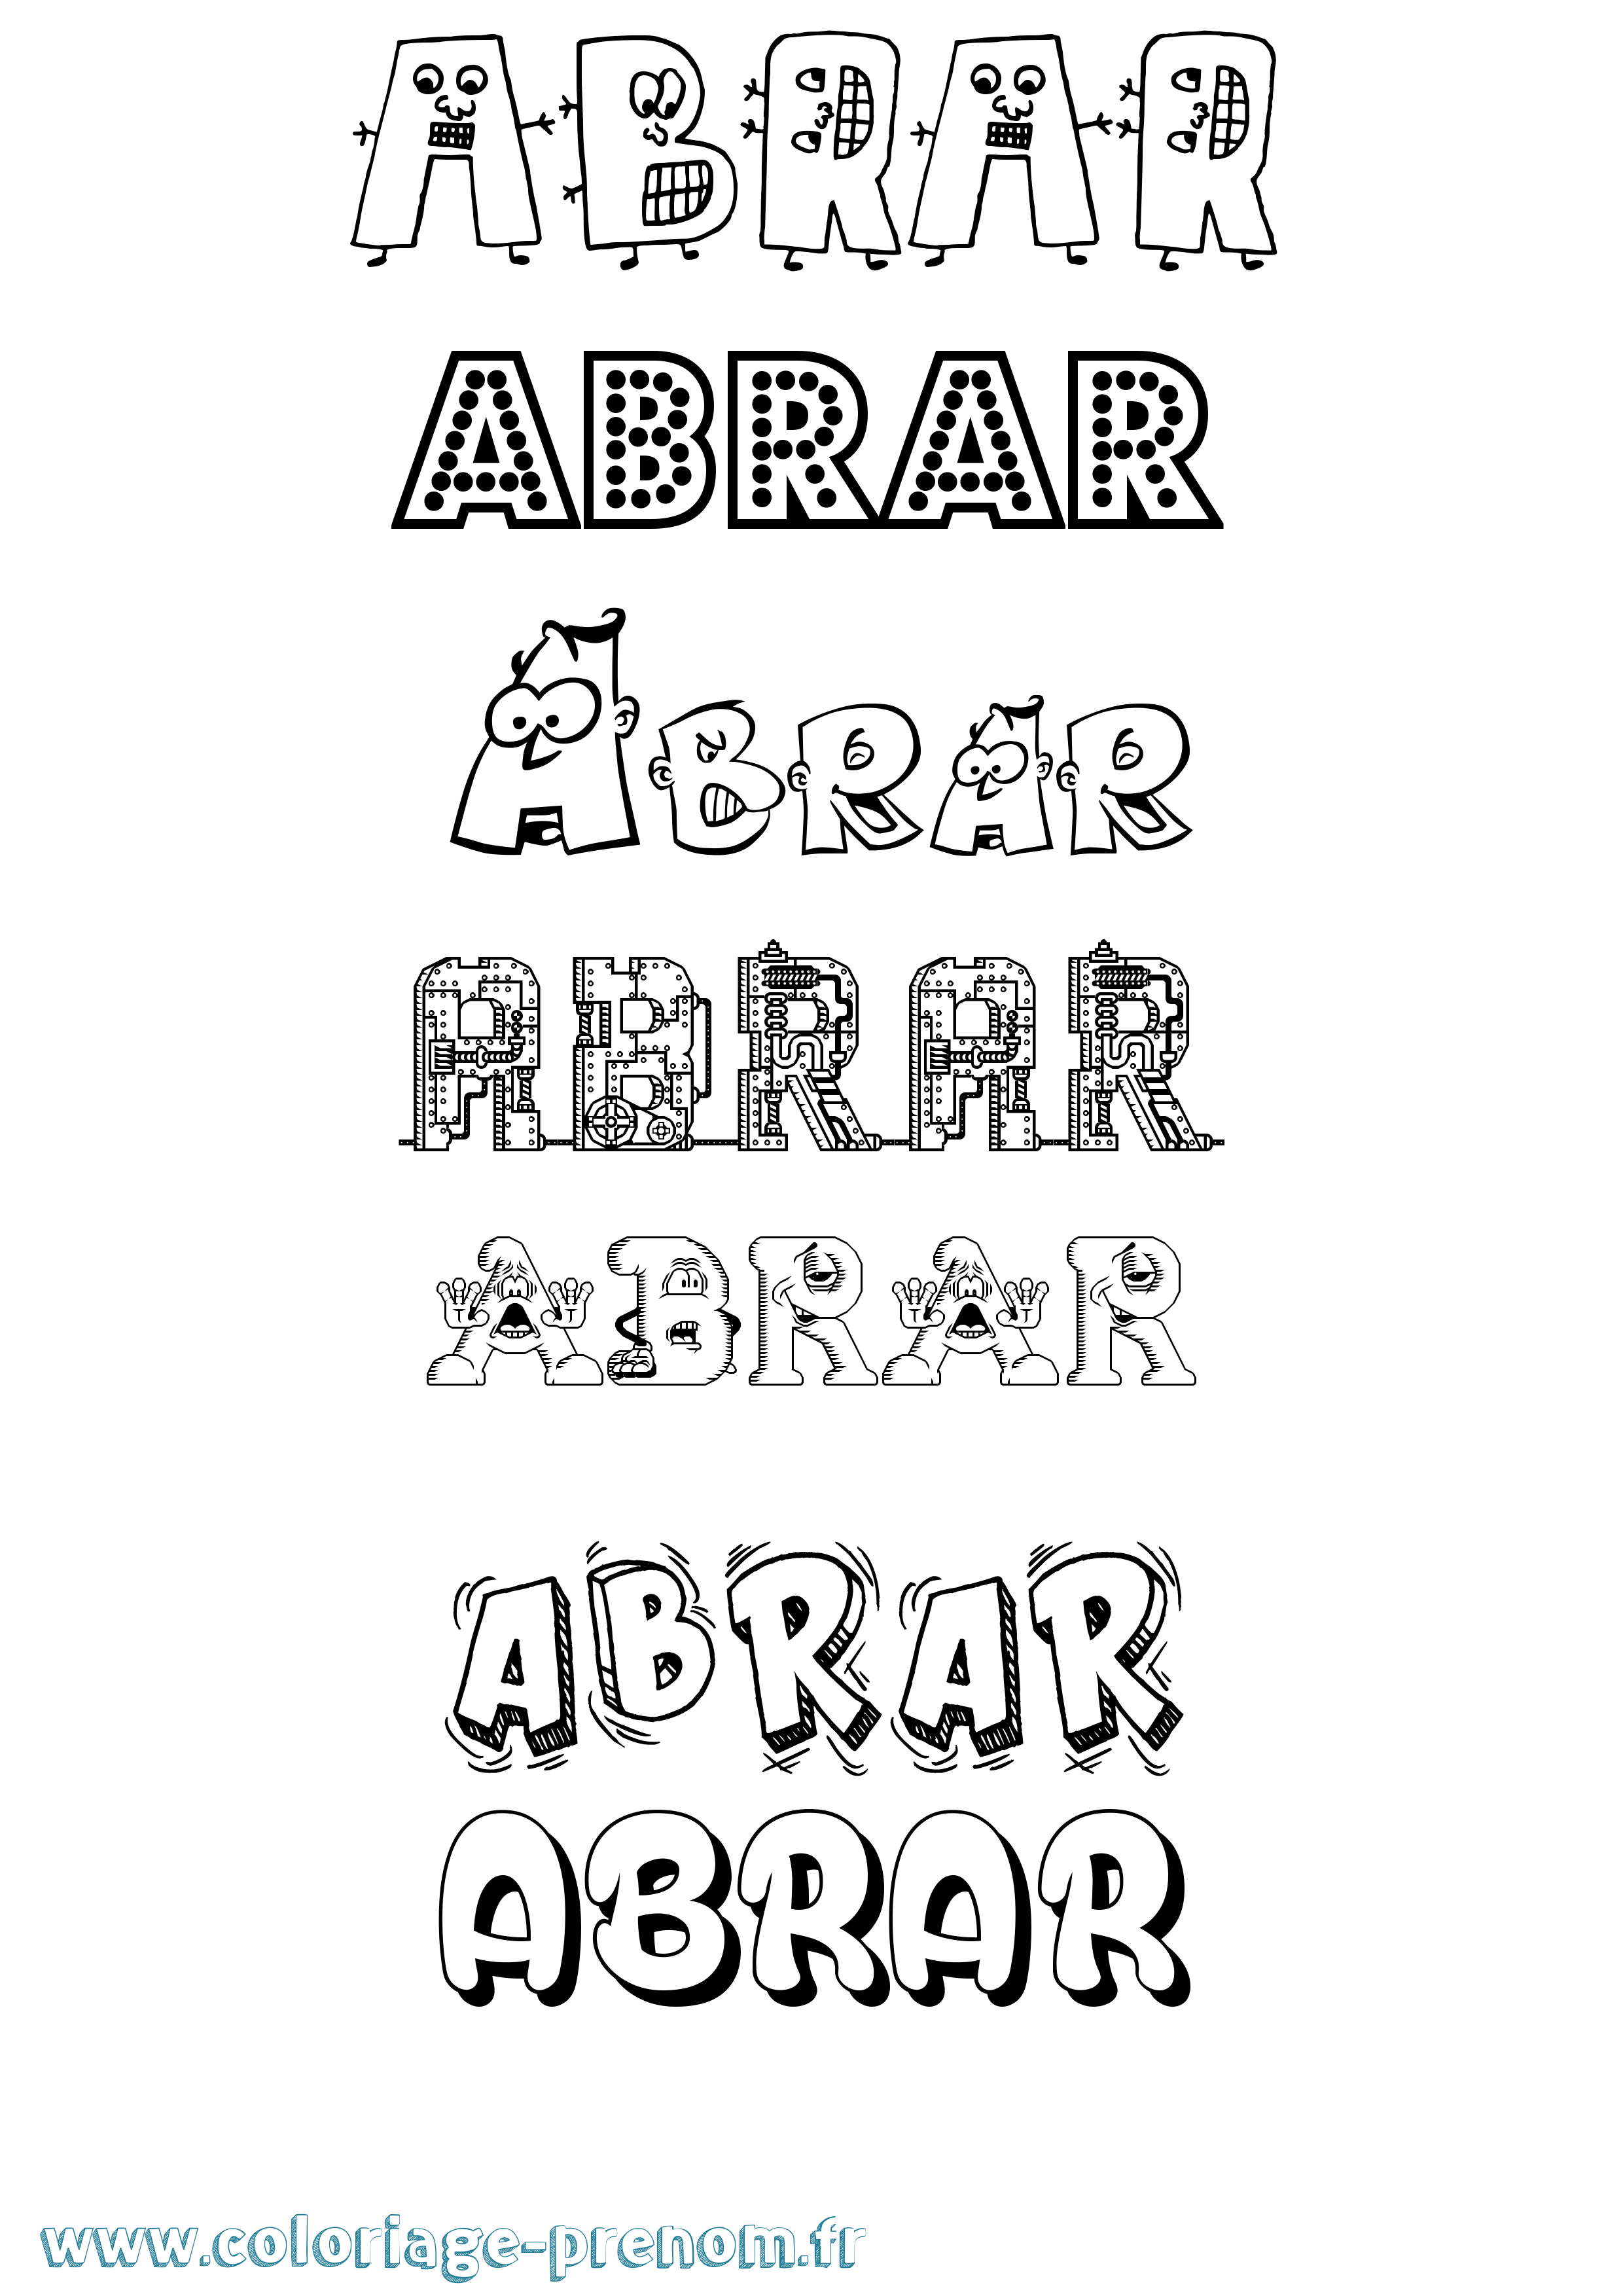 Coloriage prénom Abrar Fun